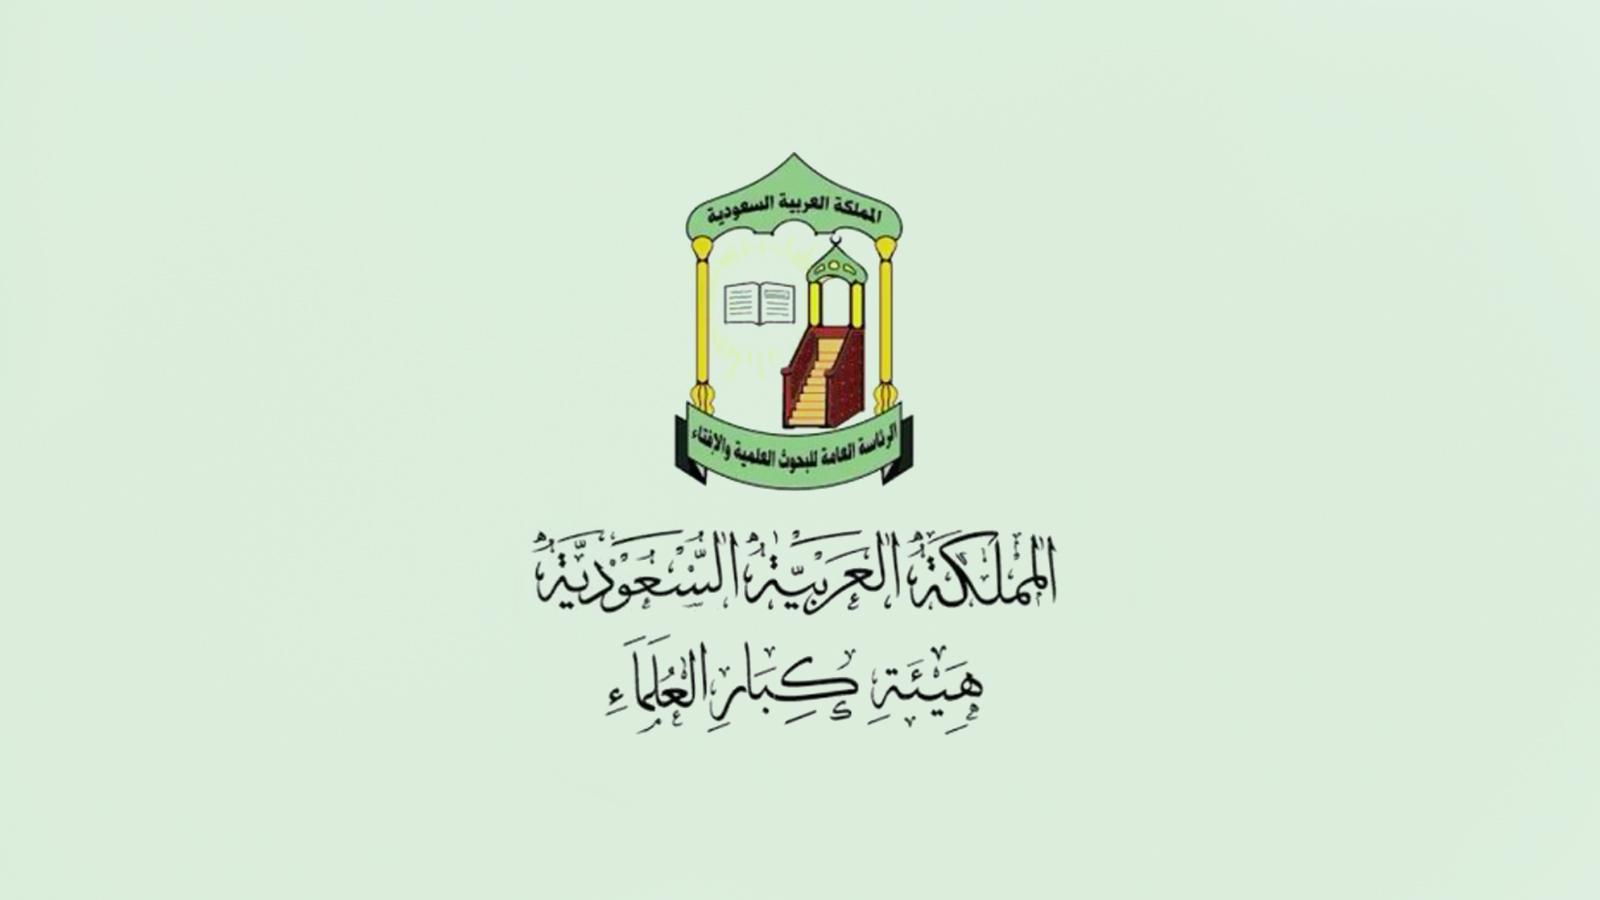 تُعد هيئة كبار العلماء أكبر هيئة دينية رسمية في السعودية اليوم، وتأسست عام 1971 لتضم أبرز الفقهاء السعوديين، في إطار جهود السلطة لاحتواء التيار الديني عبر مأسسته